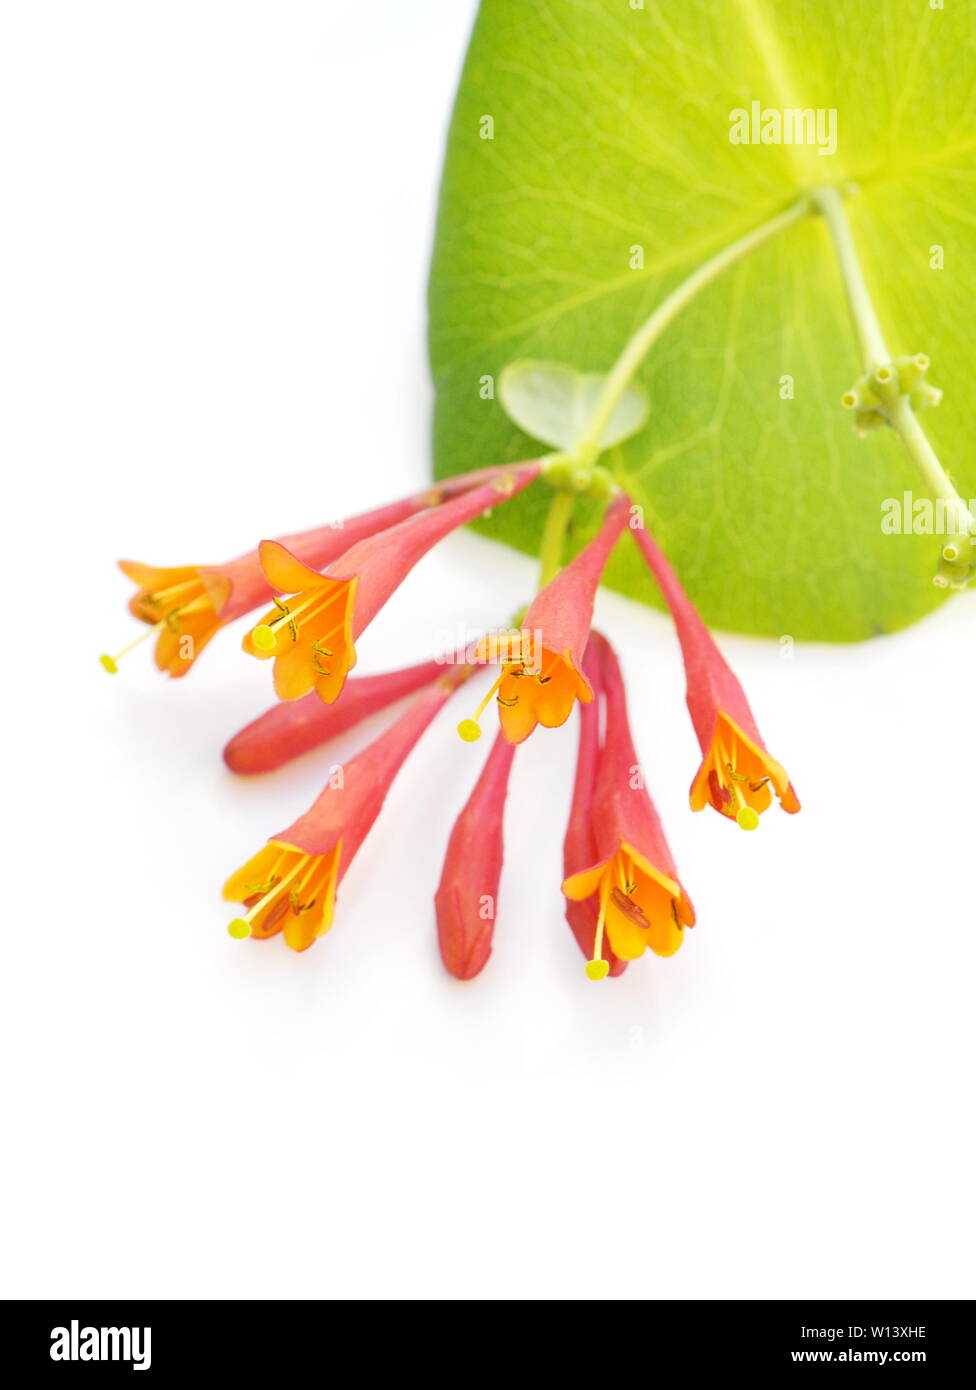 Orange honeysuckle flowers on white background Stock Photo